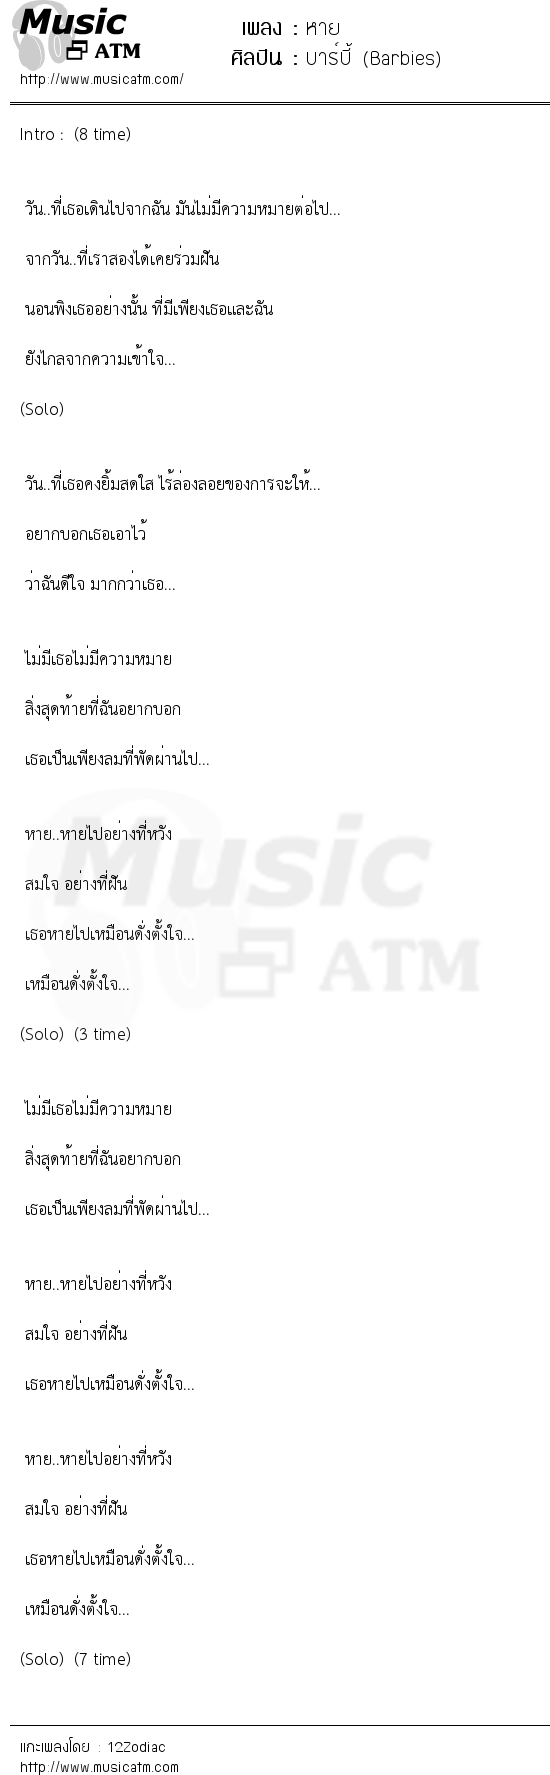 เนื้อเพลง หาย - บาร์บี้ (Barbies) | เพลงไทย